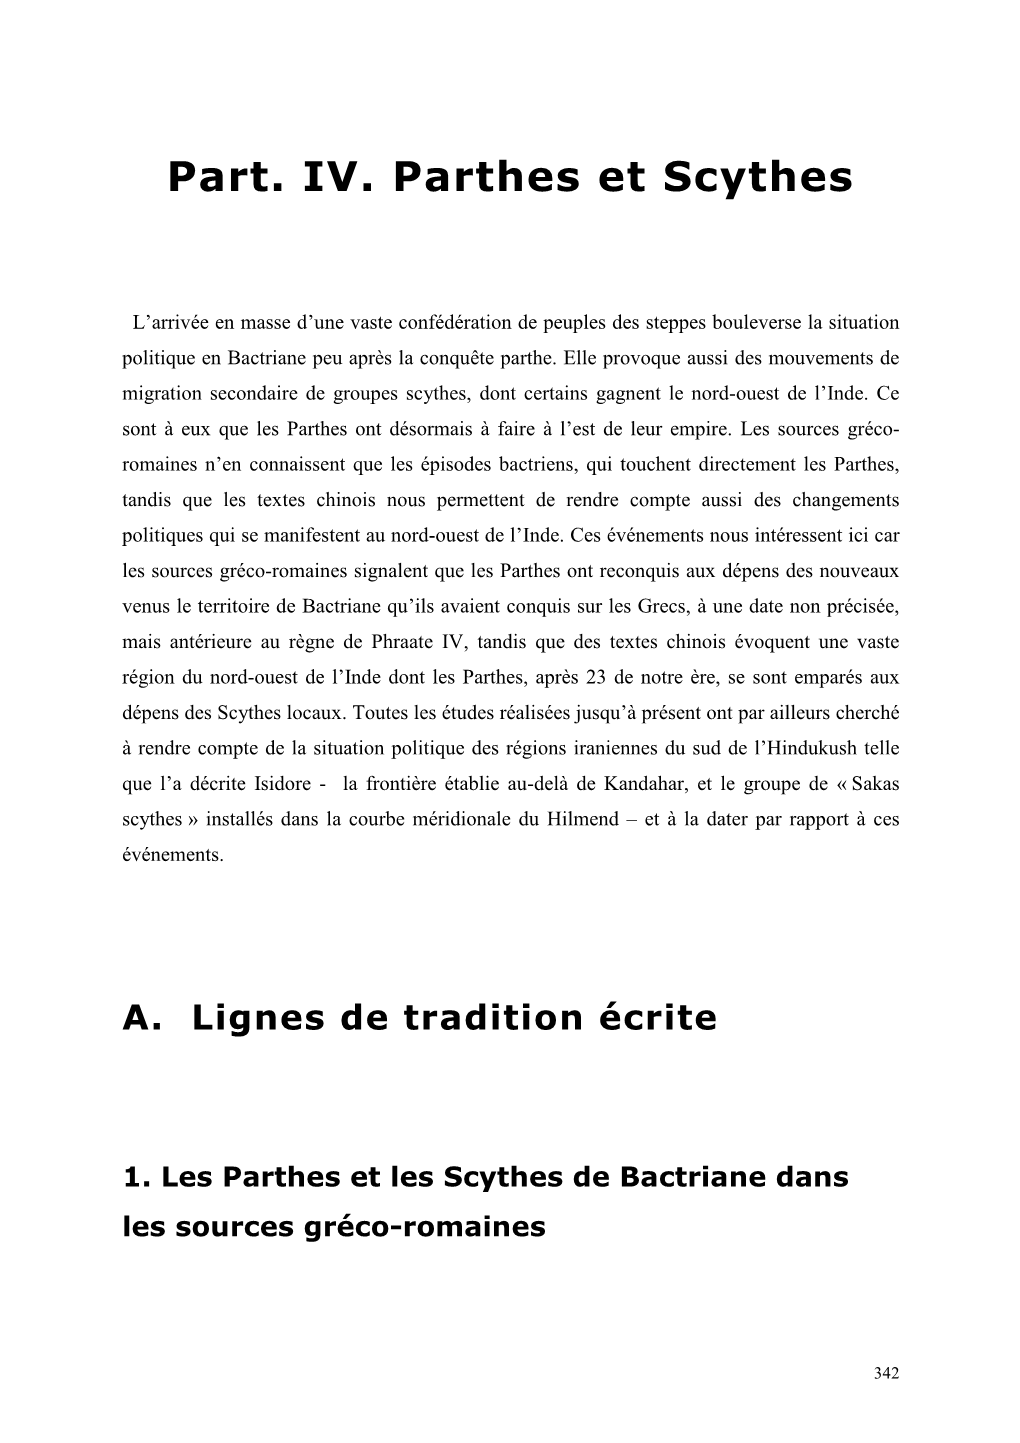 Part. IV. Parthes Et Scythes